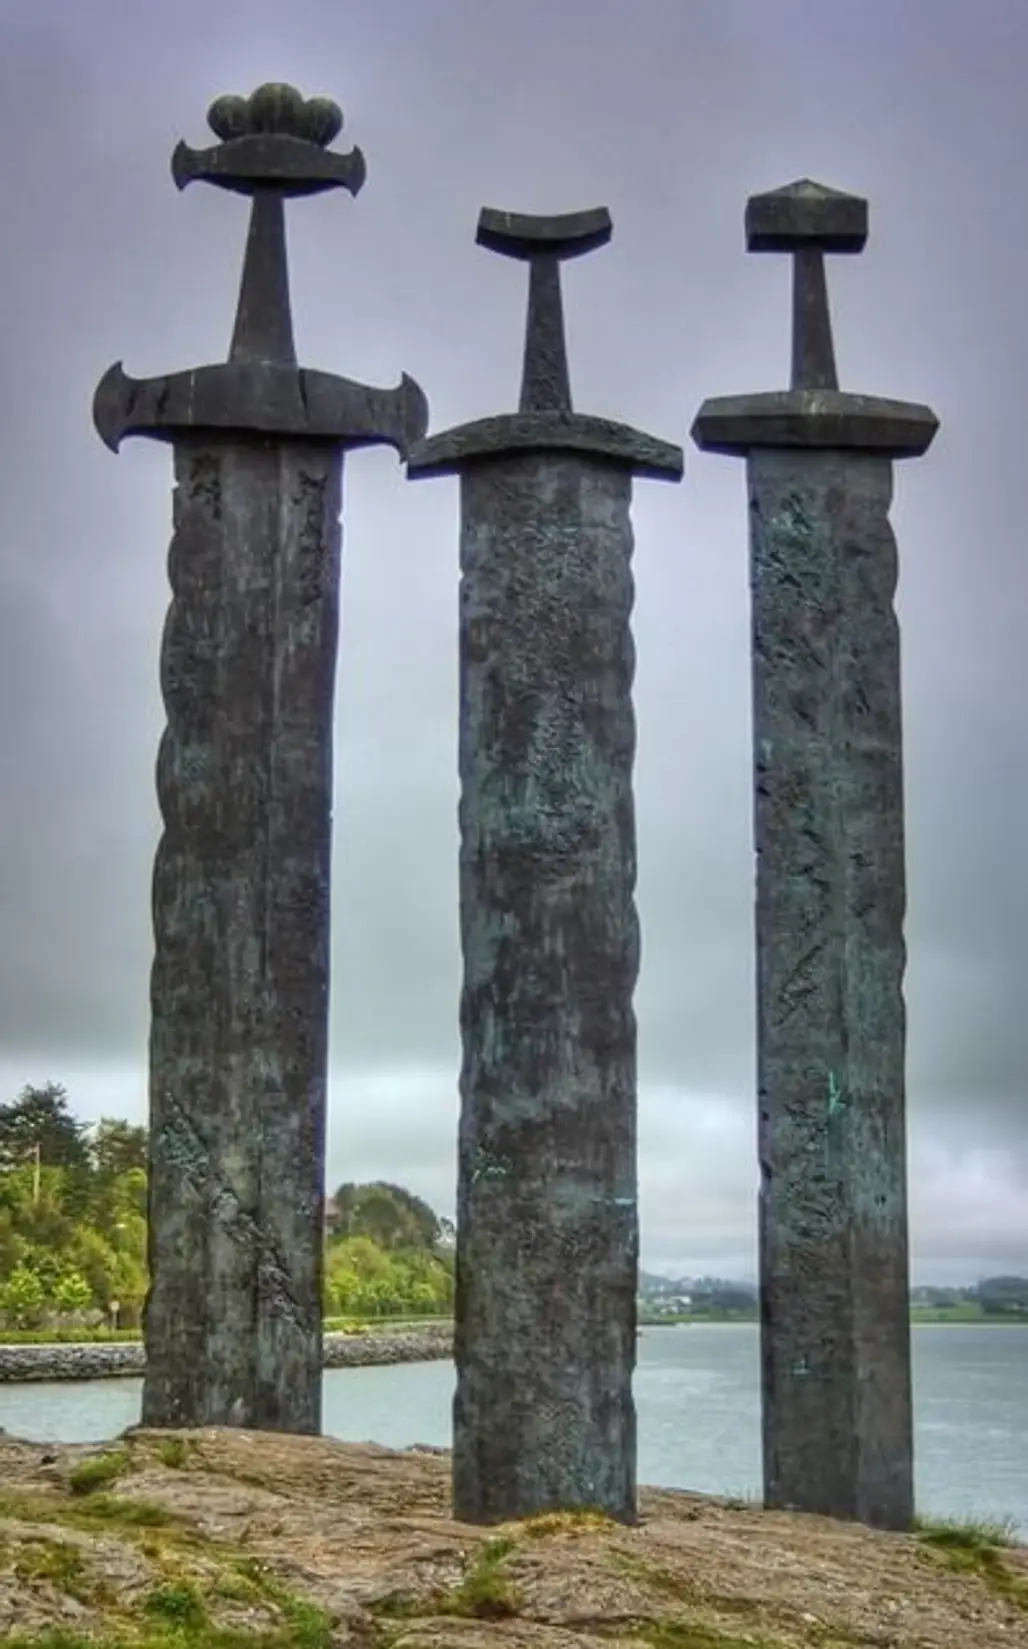 Swords in Rock,column,structure,landmark,sculpture,